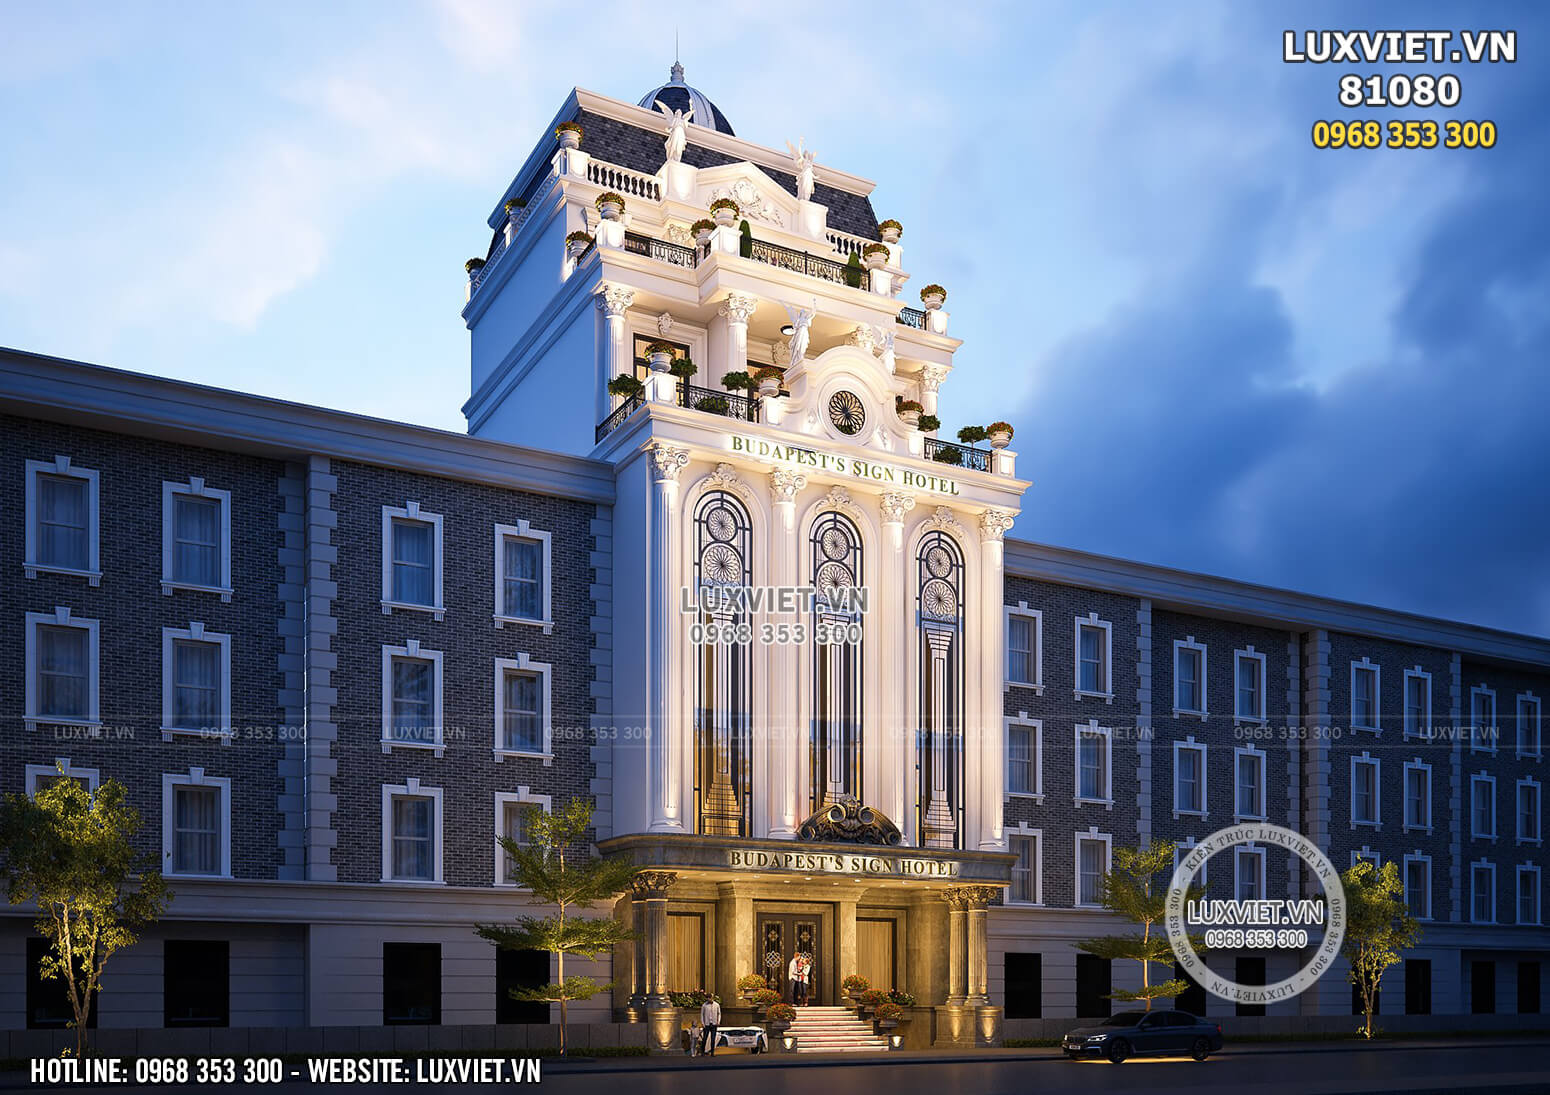 Hình ảnh: Thiết kế khách sạn tân cổ điển tại Lâm Đồng - Đà Lạt - LV 81080